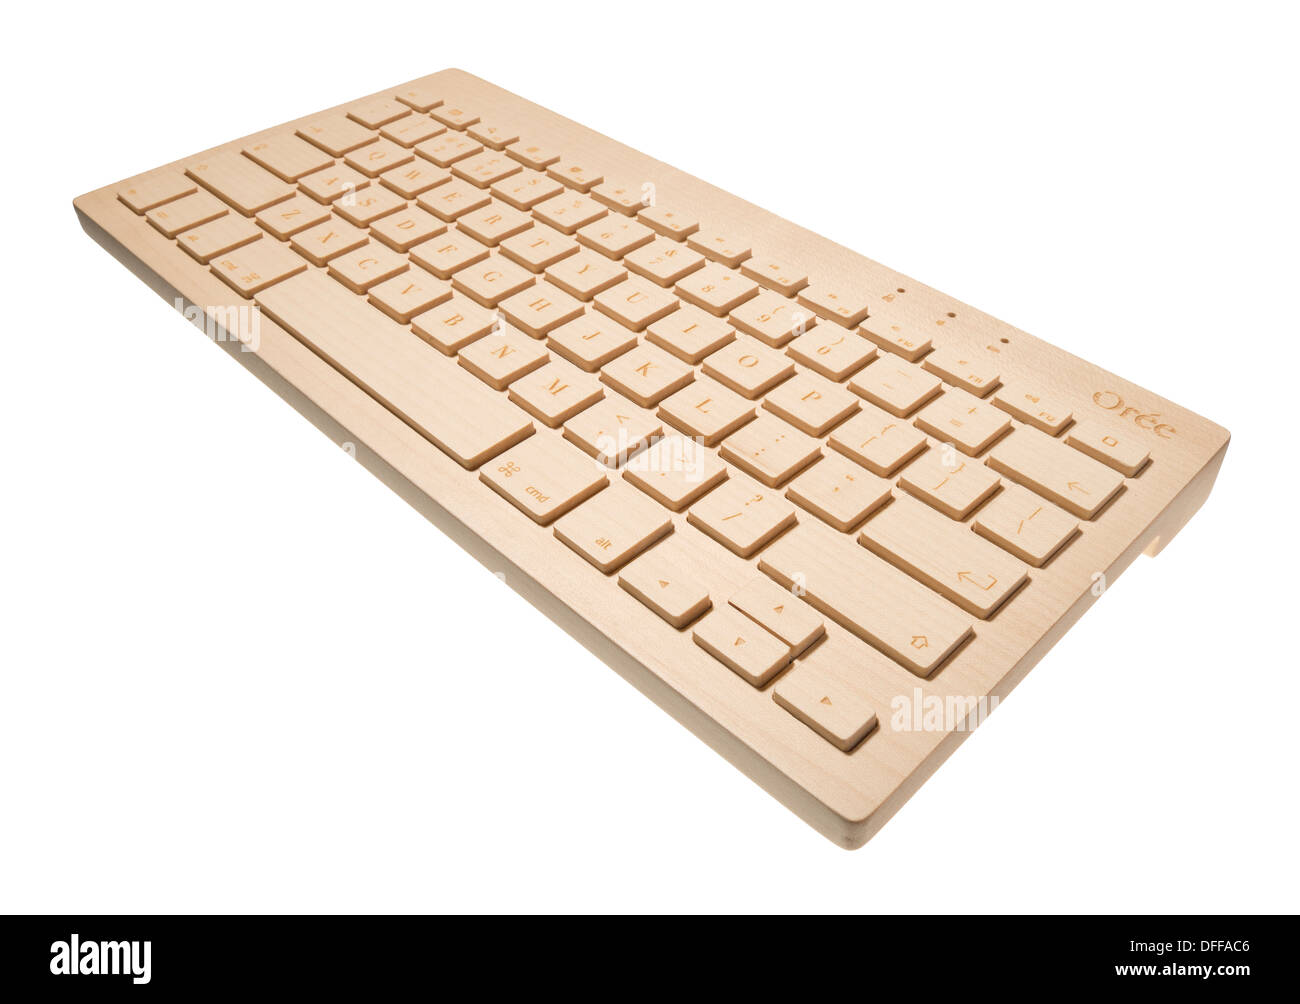 Oree Holz Computer-Tastatur Stockfotografie - Alamy